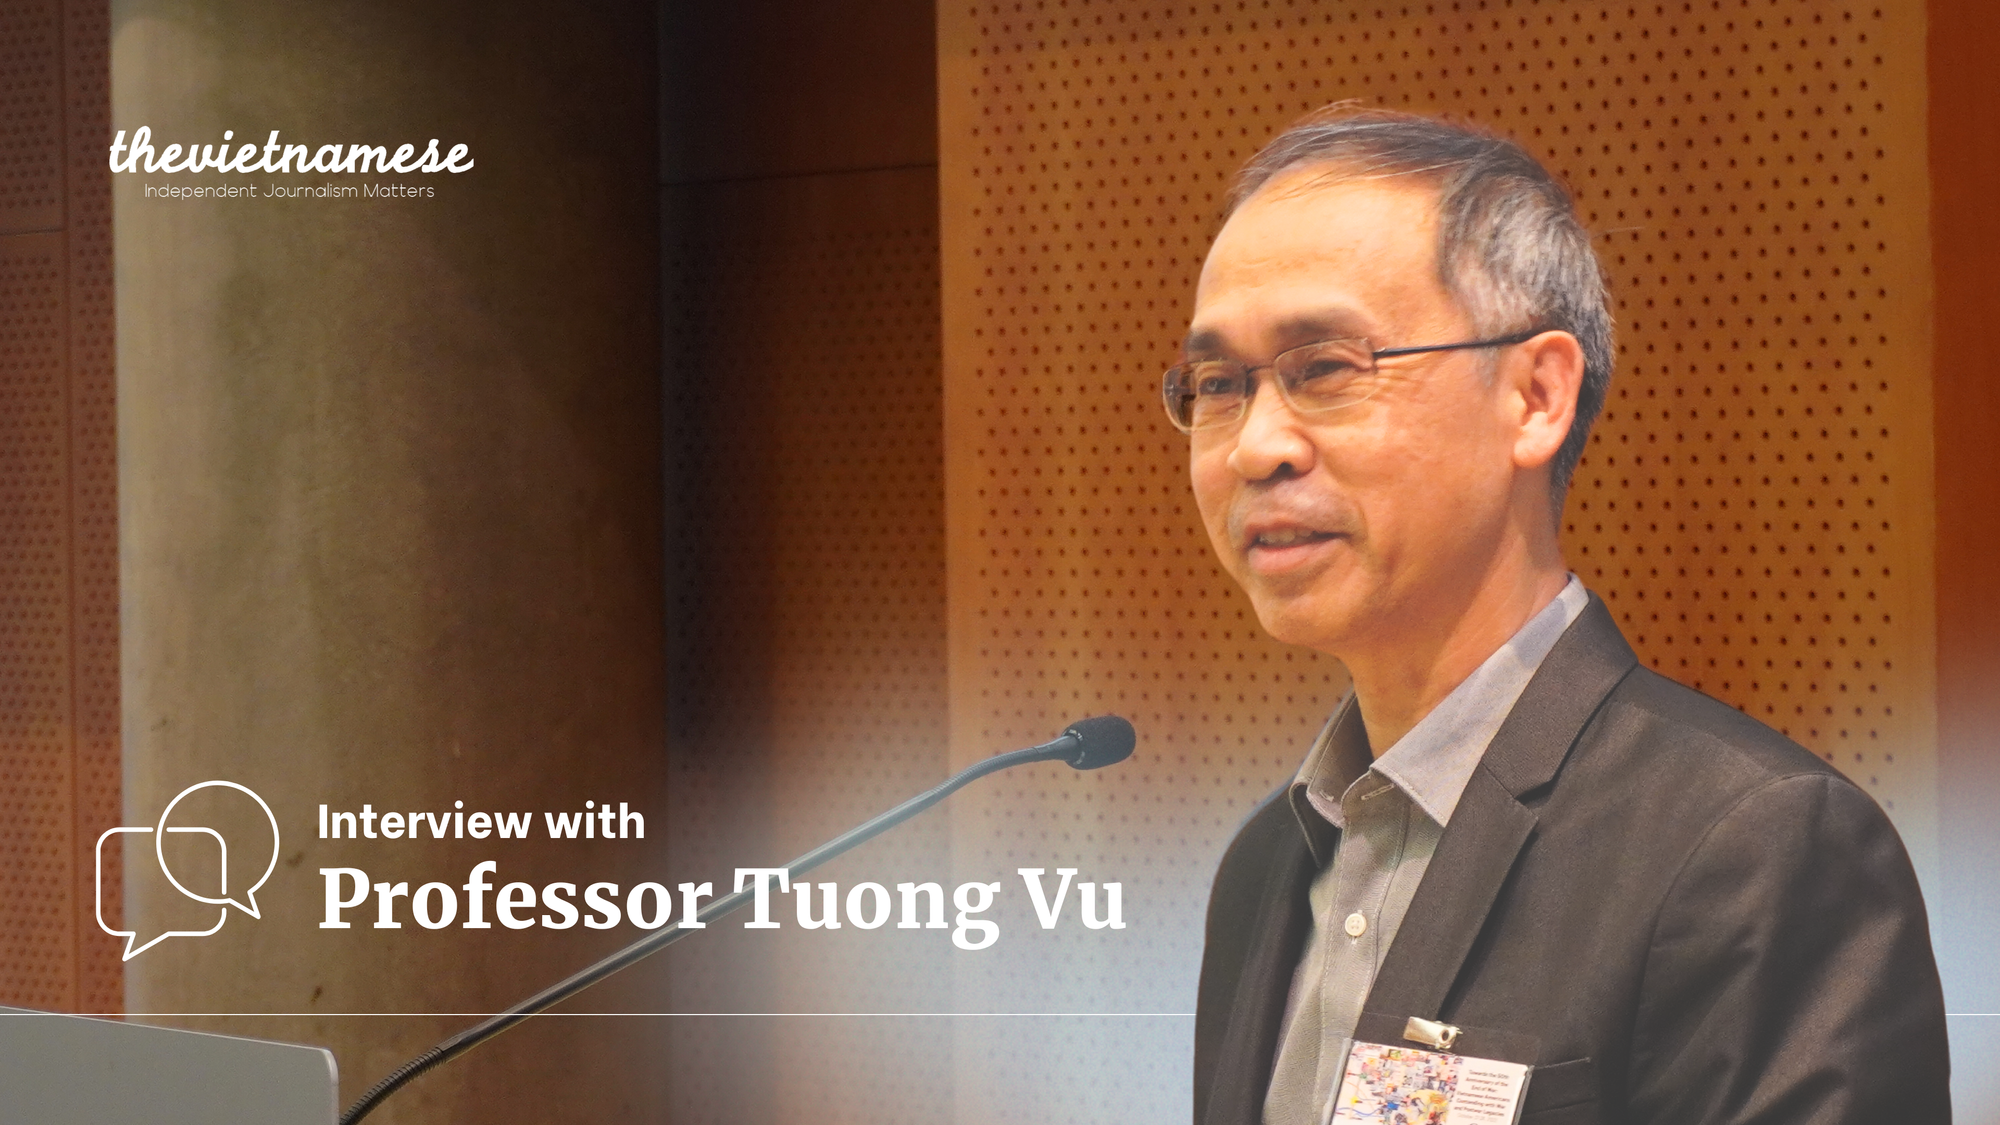 ဗီယက်နမ်ကွန်မြူနစ်ပါတီ-စစ်ပွဲ အမွေအနှစ်များနှင့် အနာဂတ်အလားအလာများအကြောင်း ပရော်ဖက်ဆာ Tuong Vu နှင့် တွေ့ဆုံမေးမြန်းခန်း